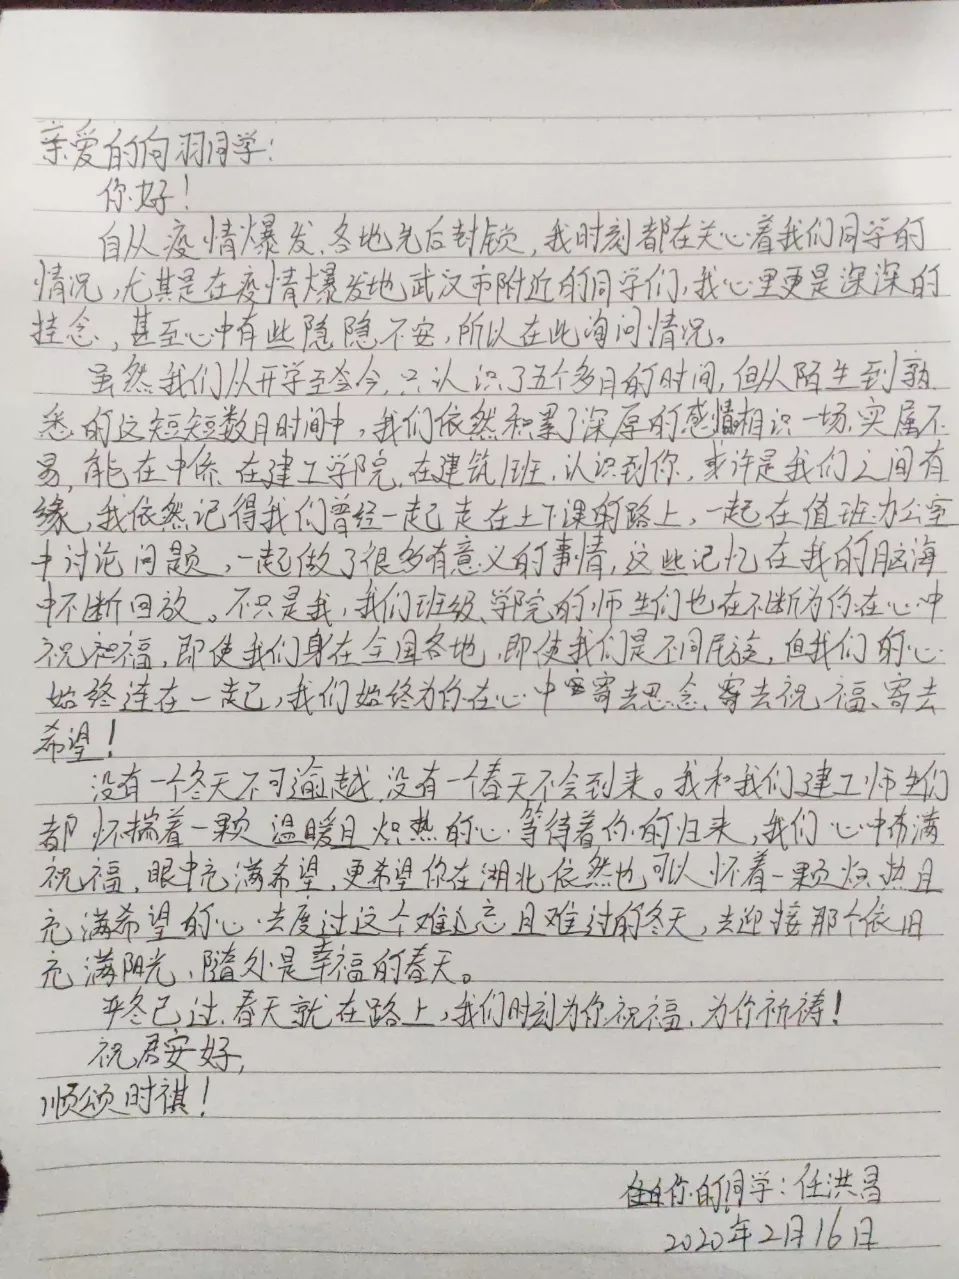 任洪昌同学写给向羽同学的一封信